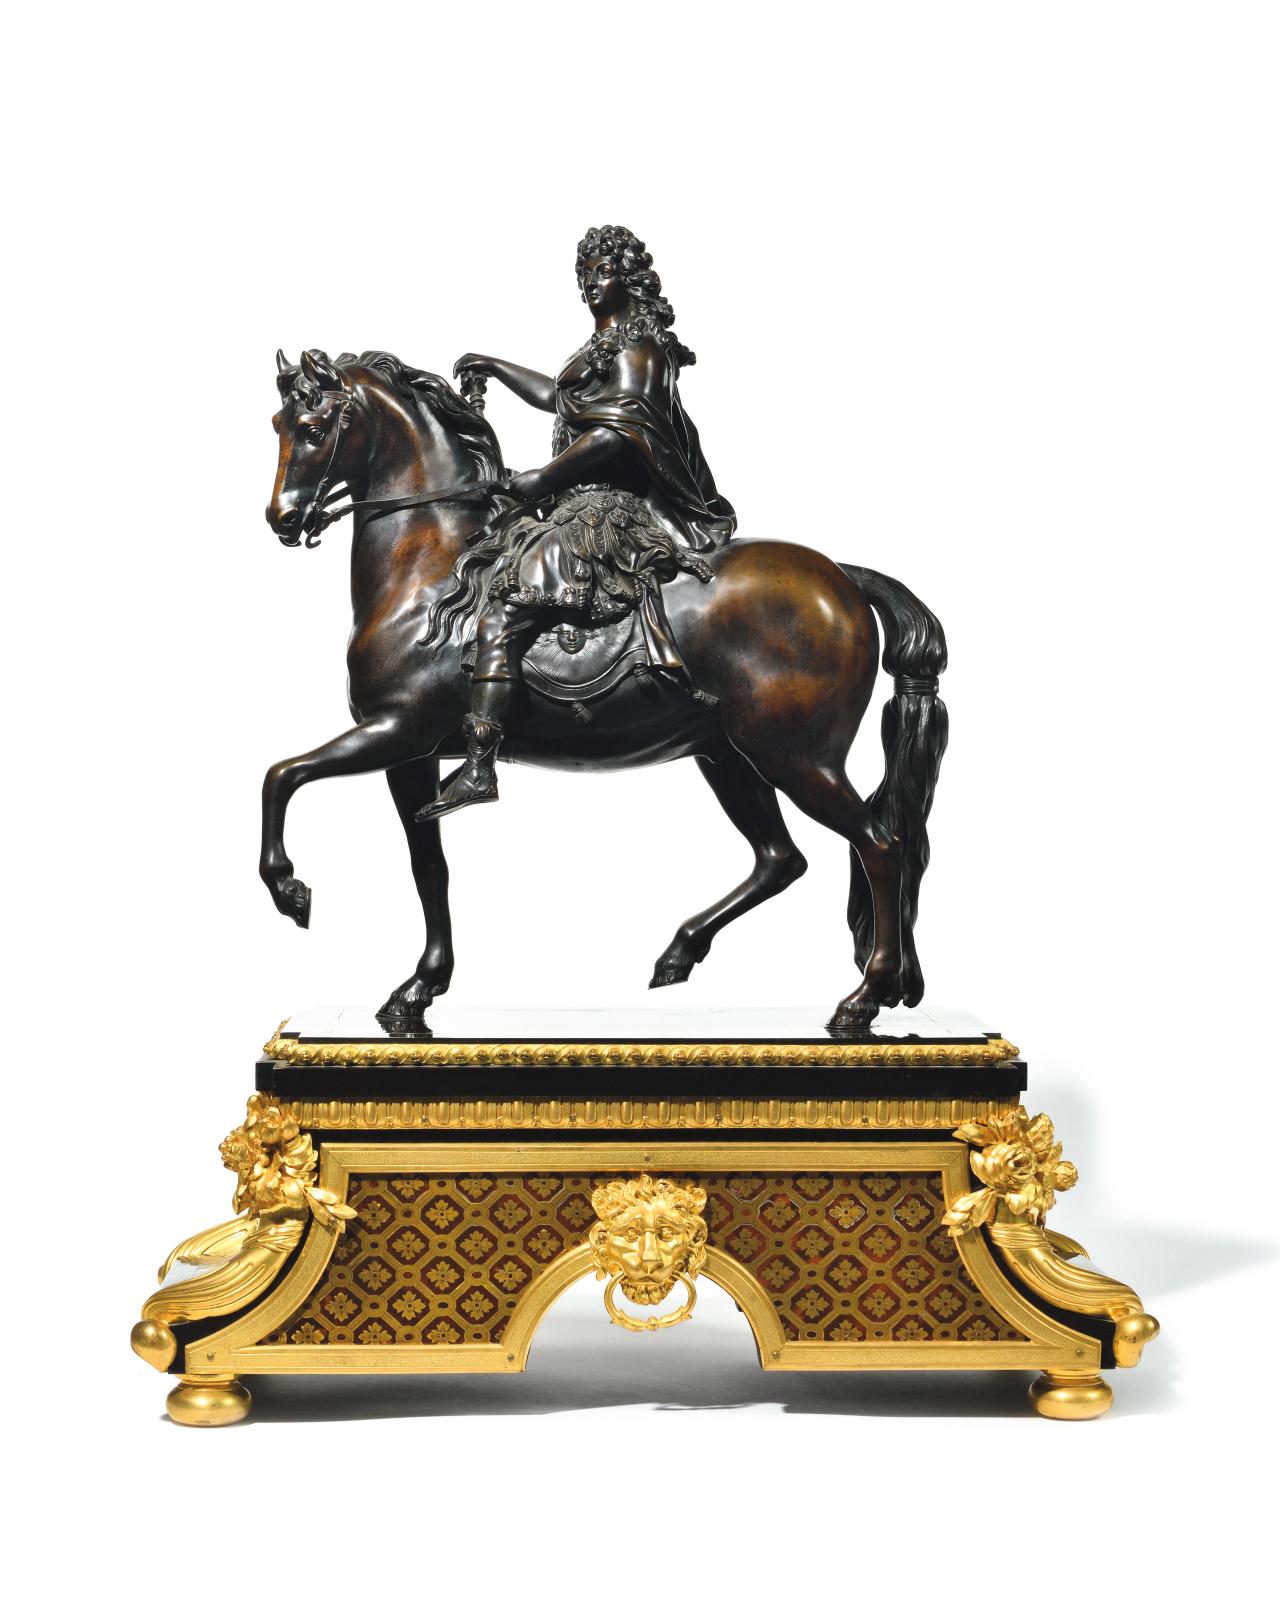 Louis XIV à cheval dans un bronze du XIXe